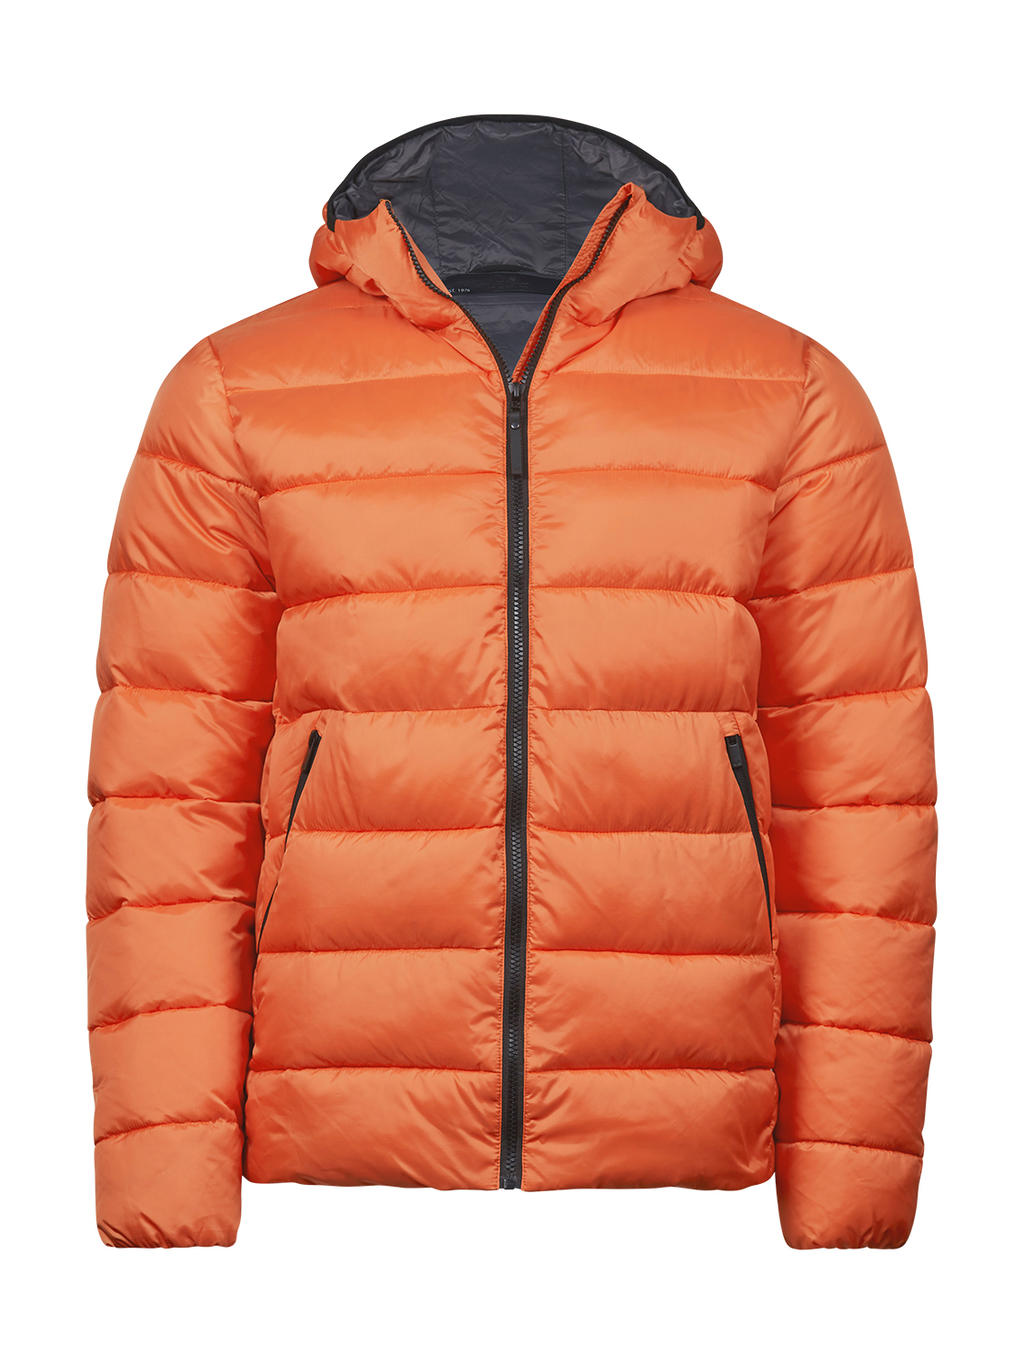  Lite Hooded Jacket in Farbe Dusty Orange